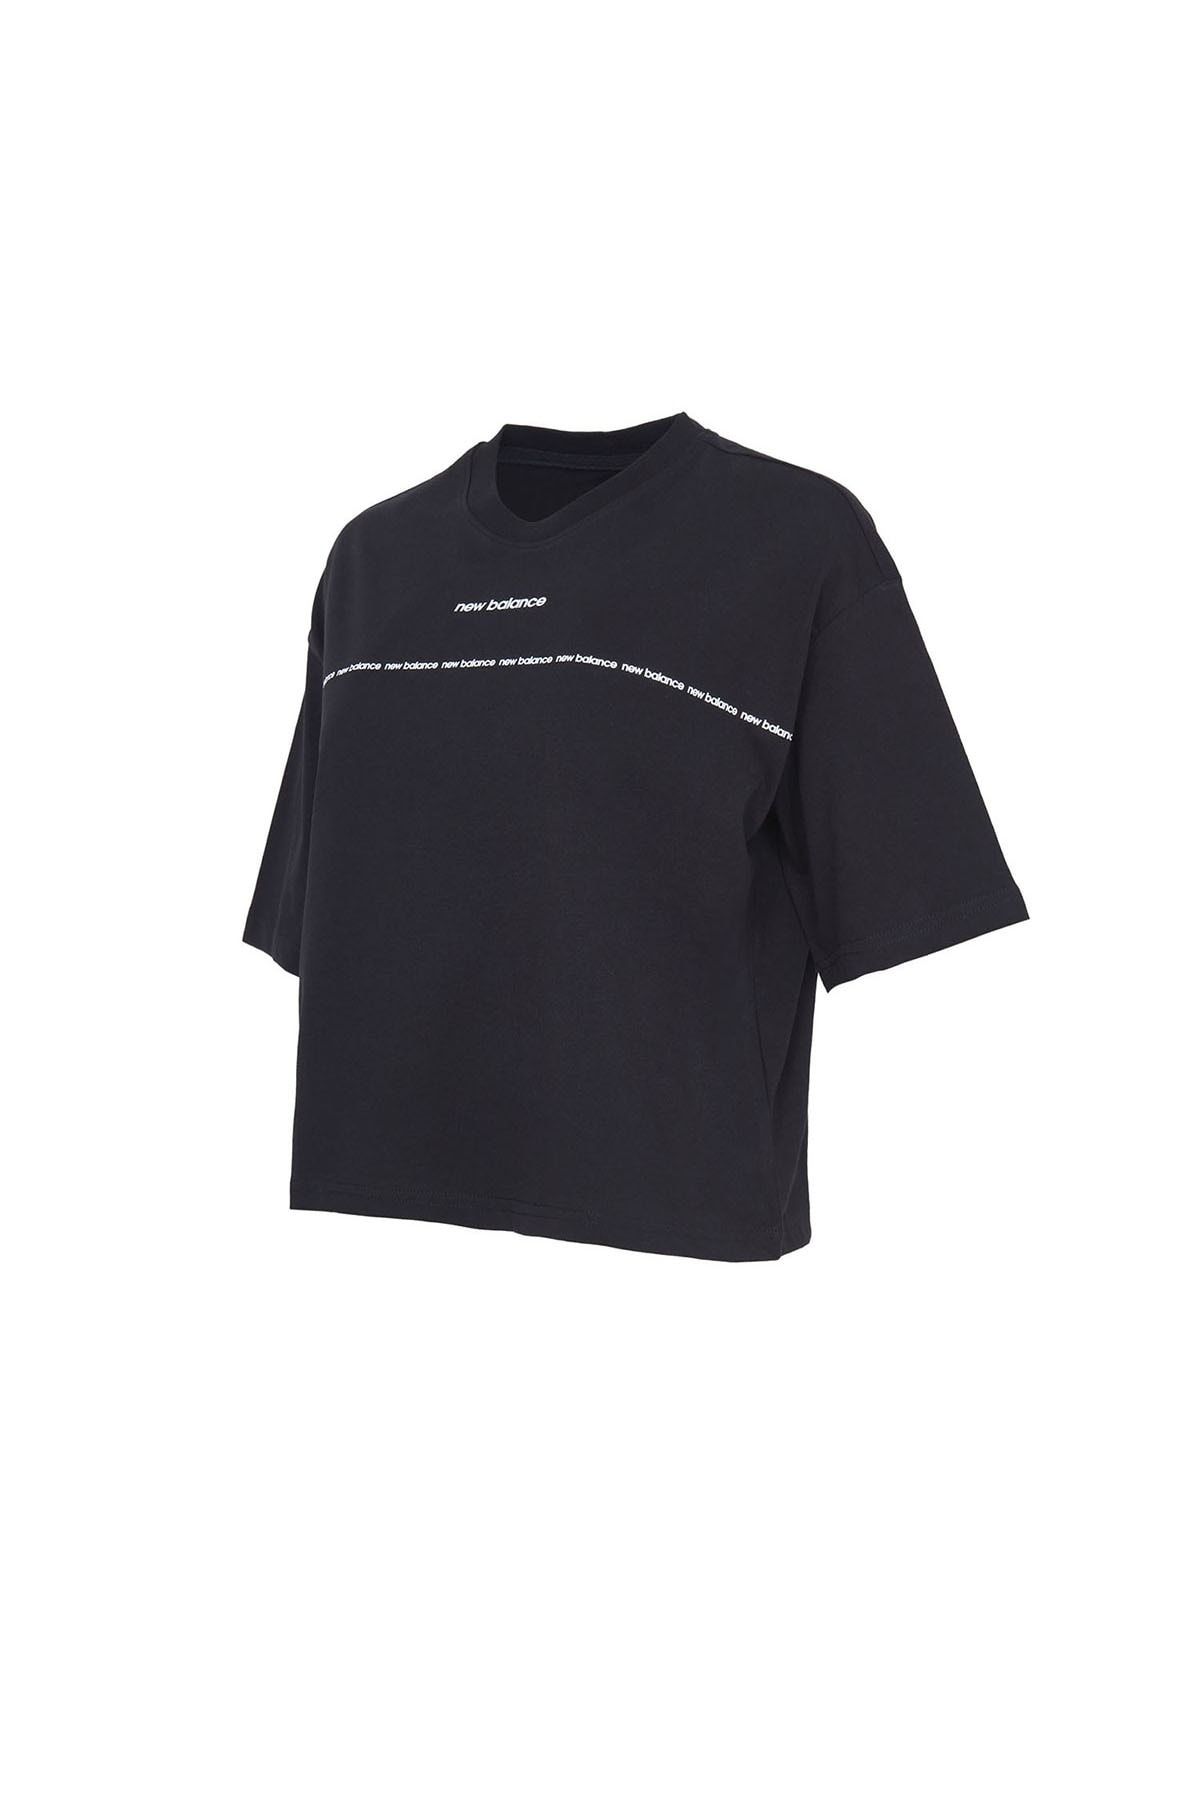 New Balance Kadın Günlük T-shirt Wnt1349-bk